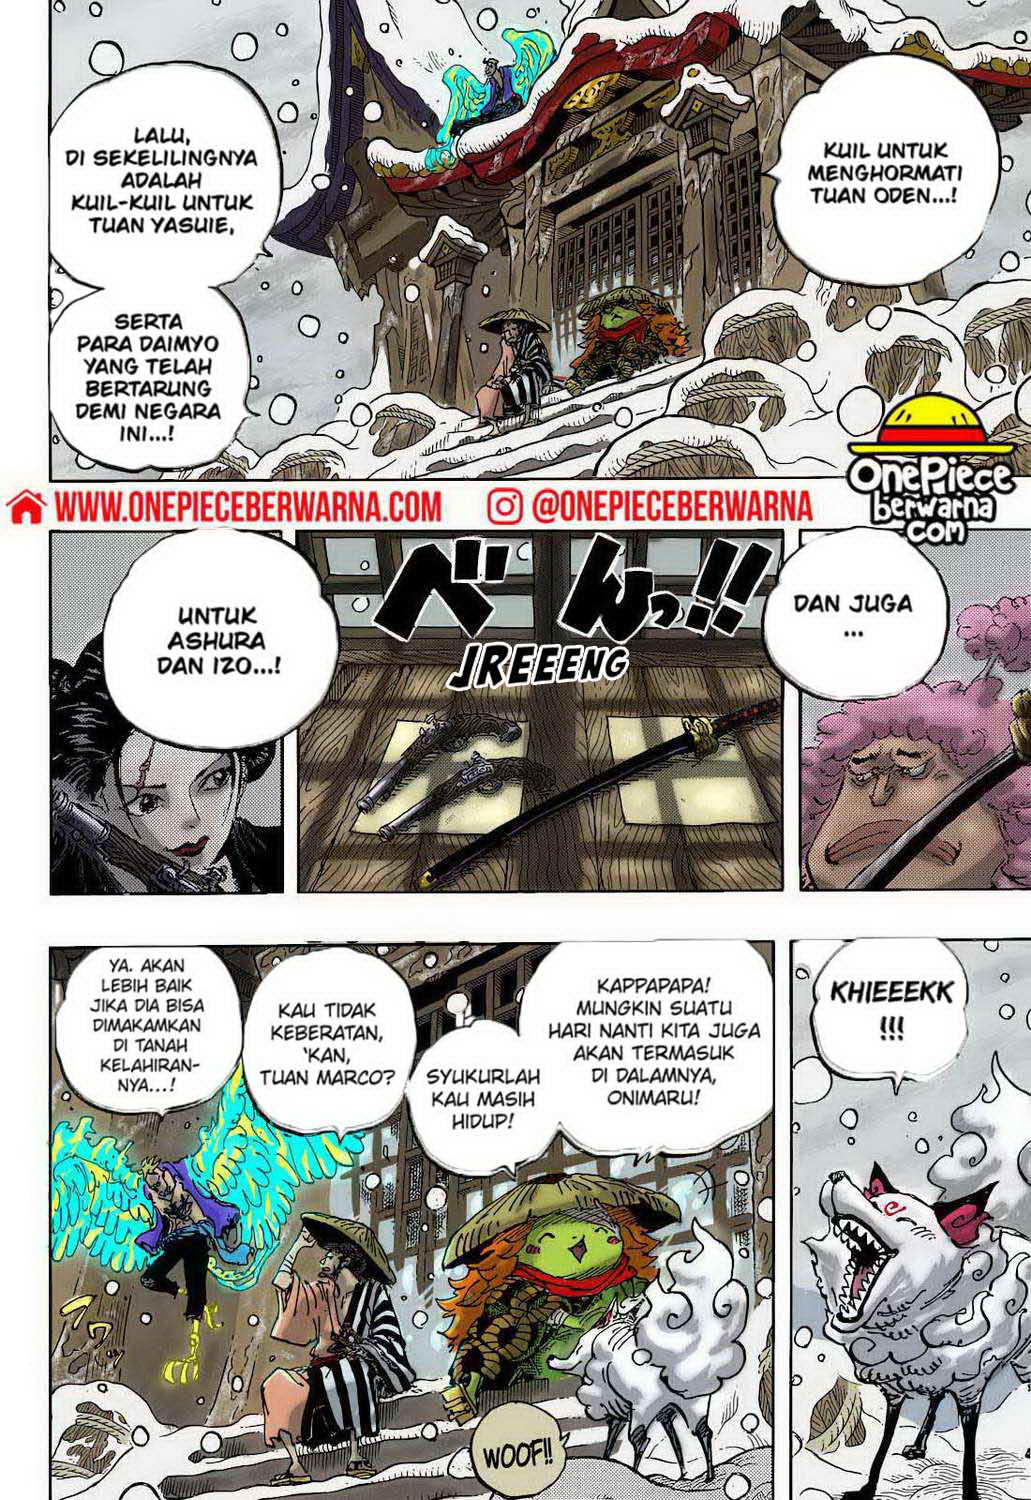 One Piece Berwarna Chapter 1052